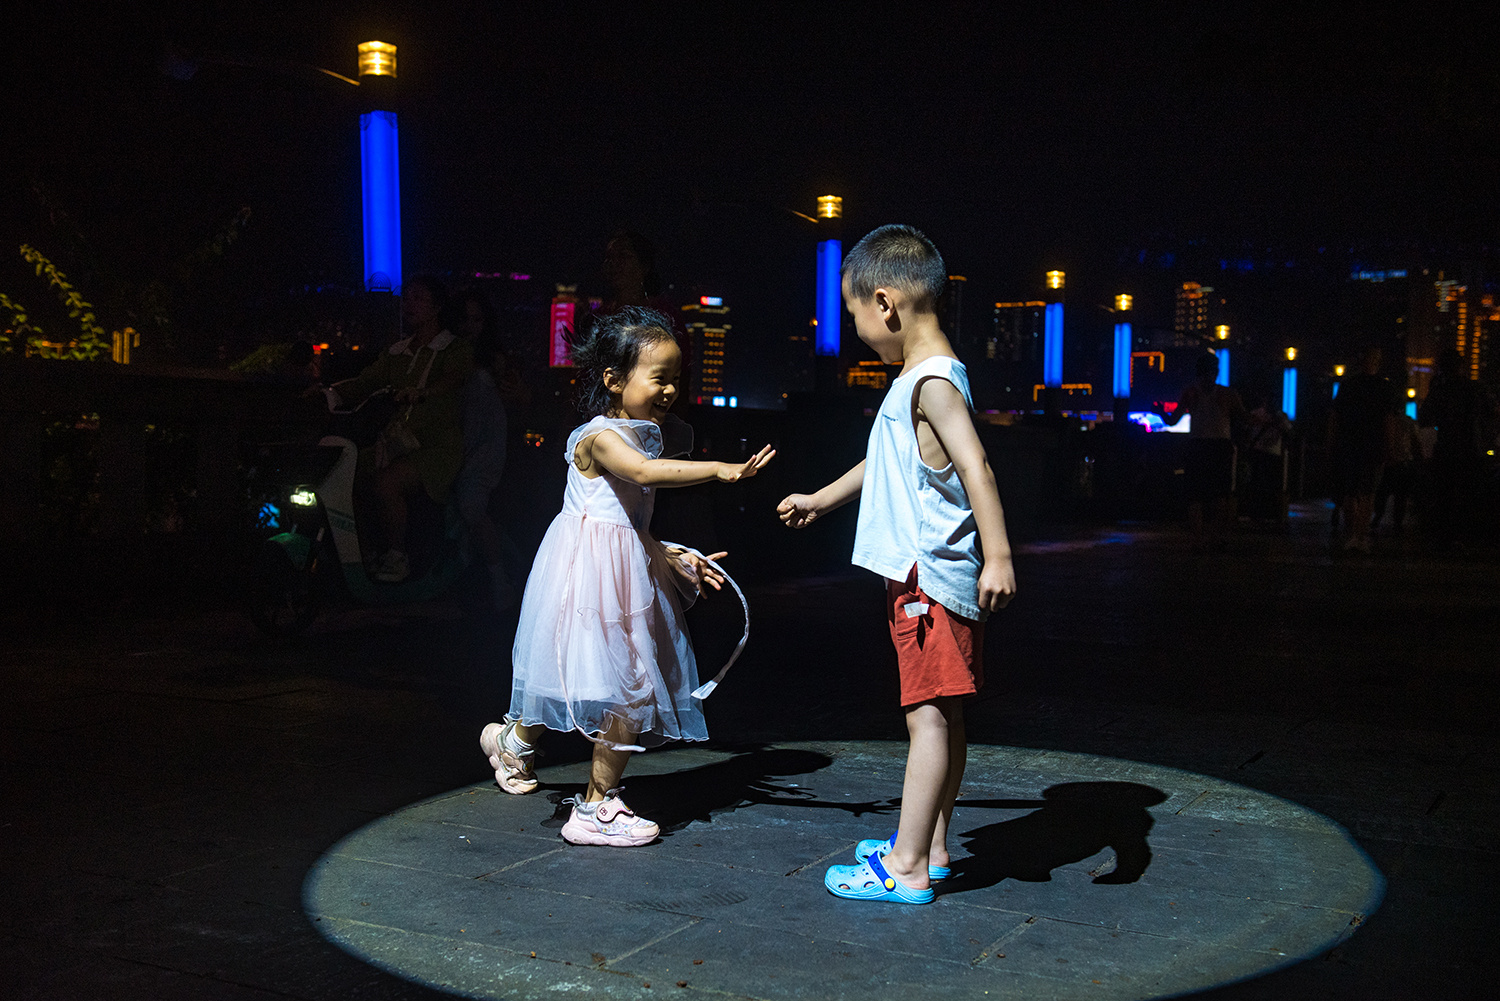 万州区南门口广场，萌娃在夜幕下玩“石头剪刀布”。记者 侯本艳 摄